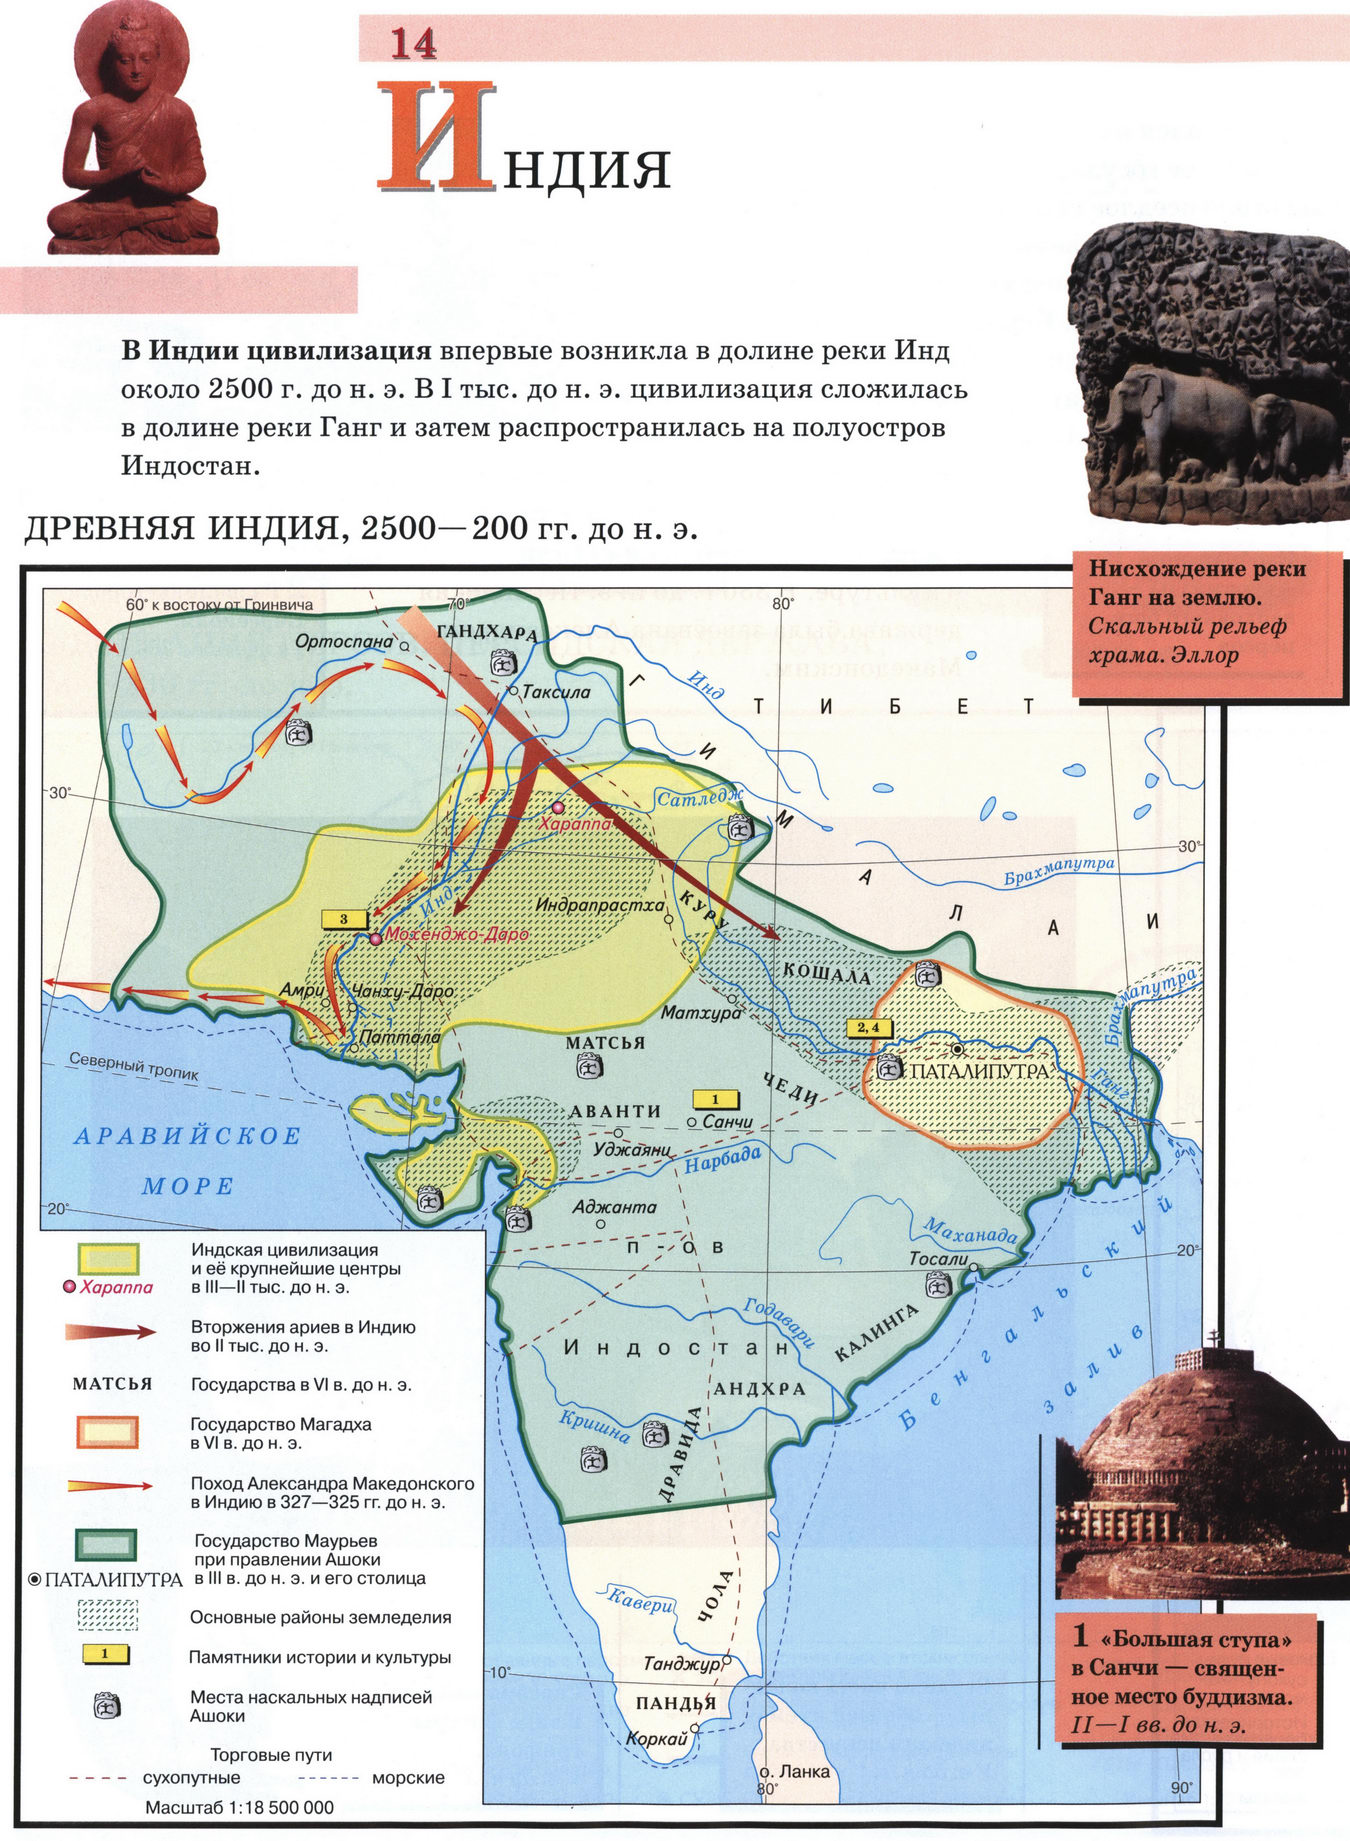 Вавилон карта древнего мира